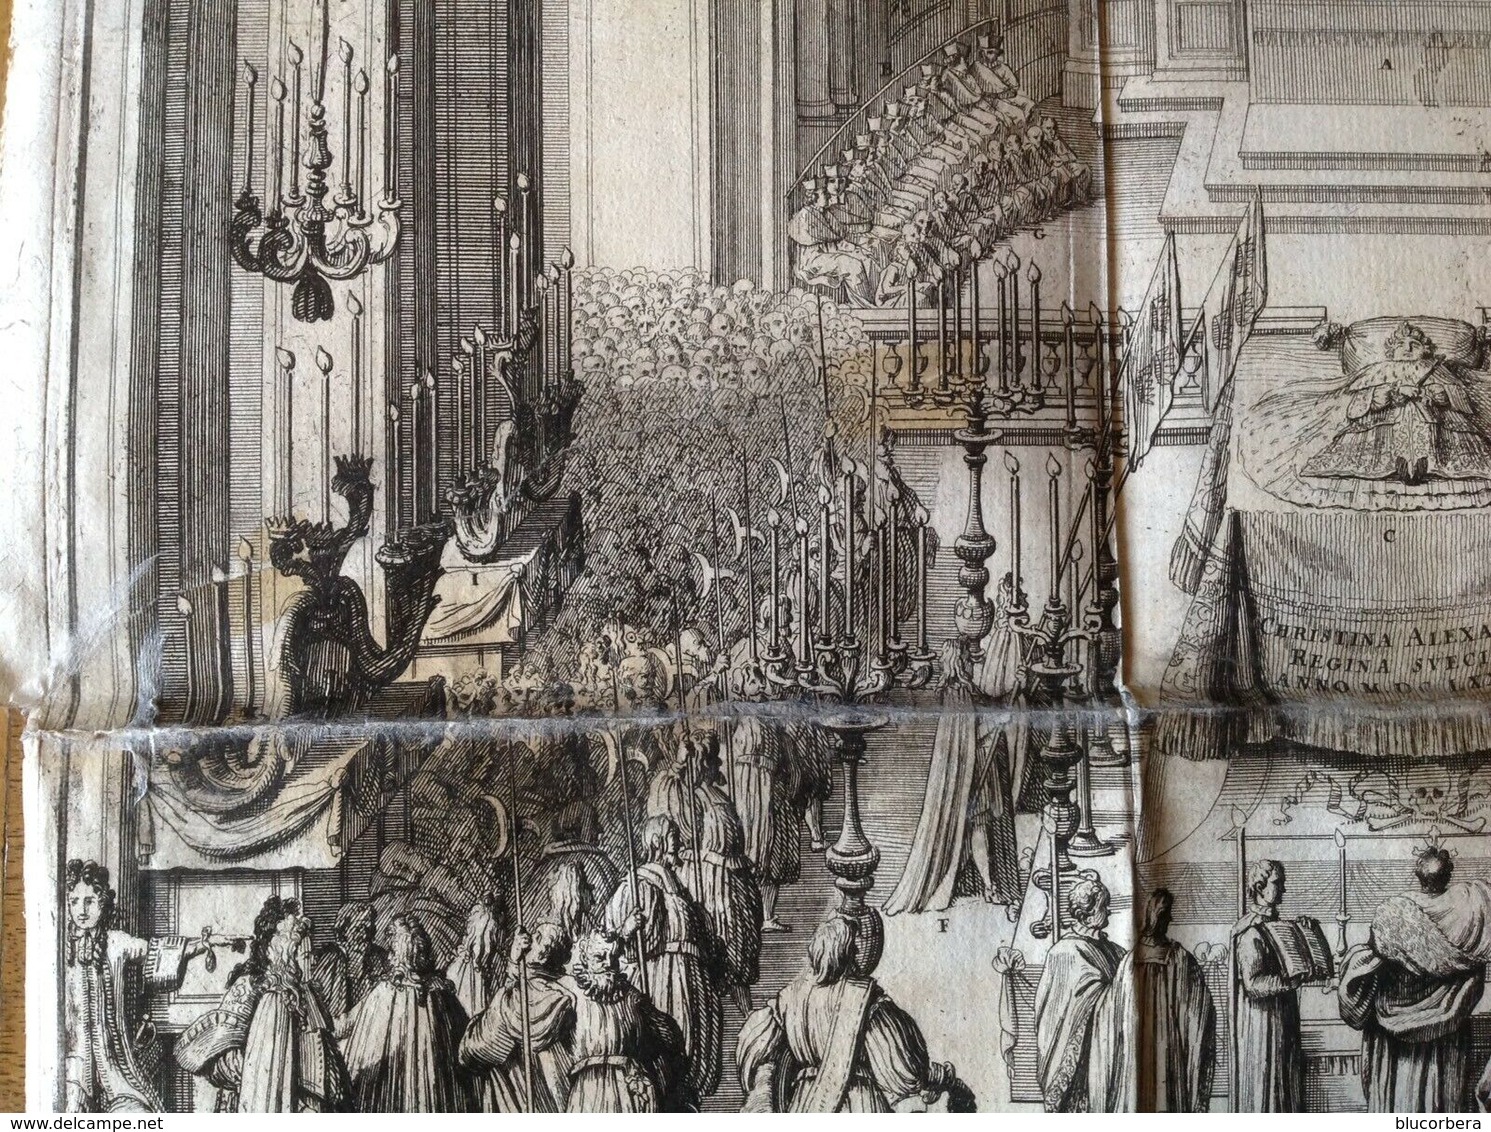 APPARATO FUNEBRE MARIA CRISTINA DI SVEZIA 1689 INC. NICOLAS DORIGNY - MOLTO RARA - - Litografia